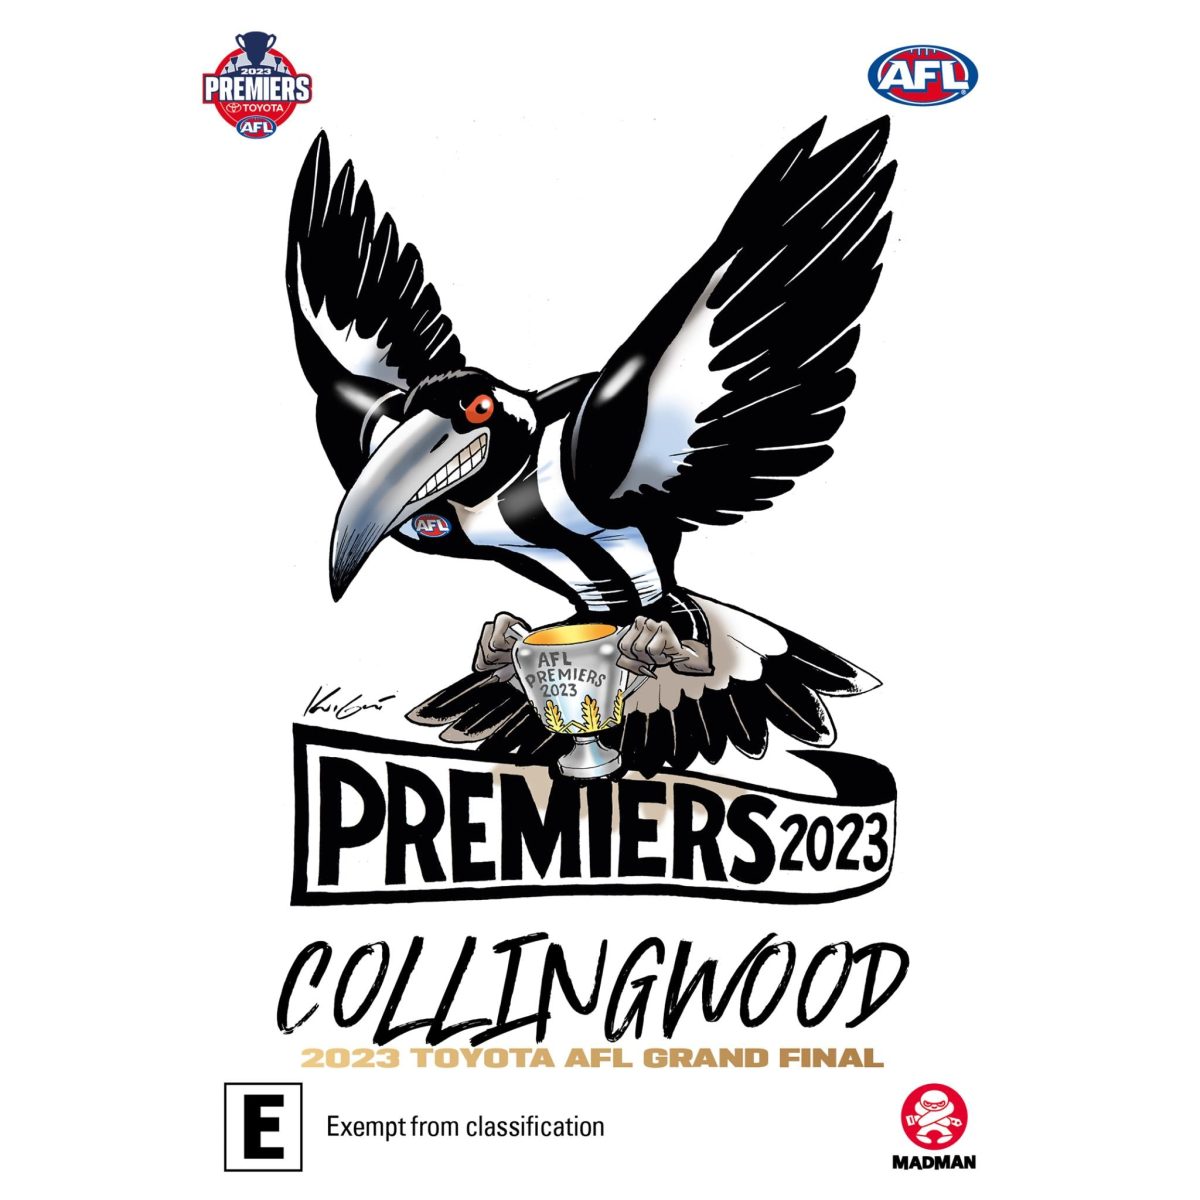 AFL Premiers 2023: Collingwood DVD